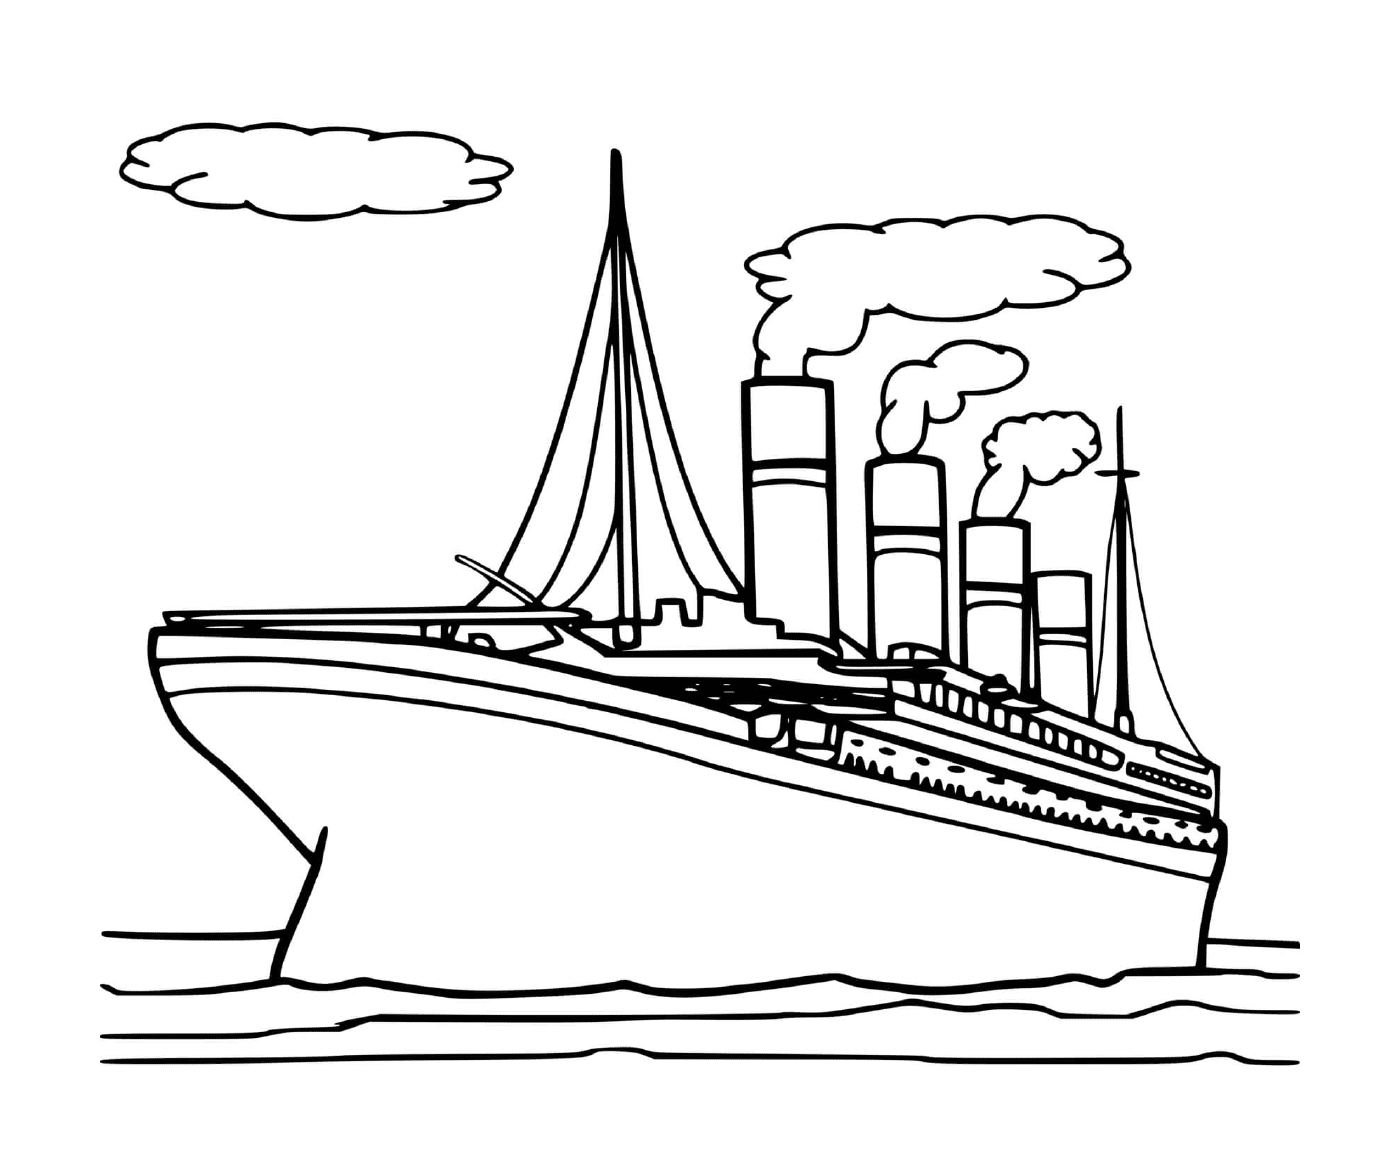  Титаническая лодка 